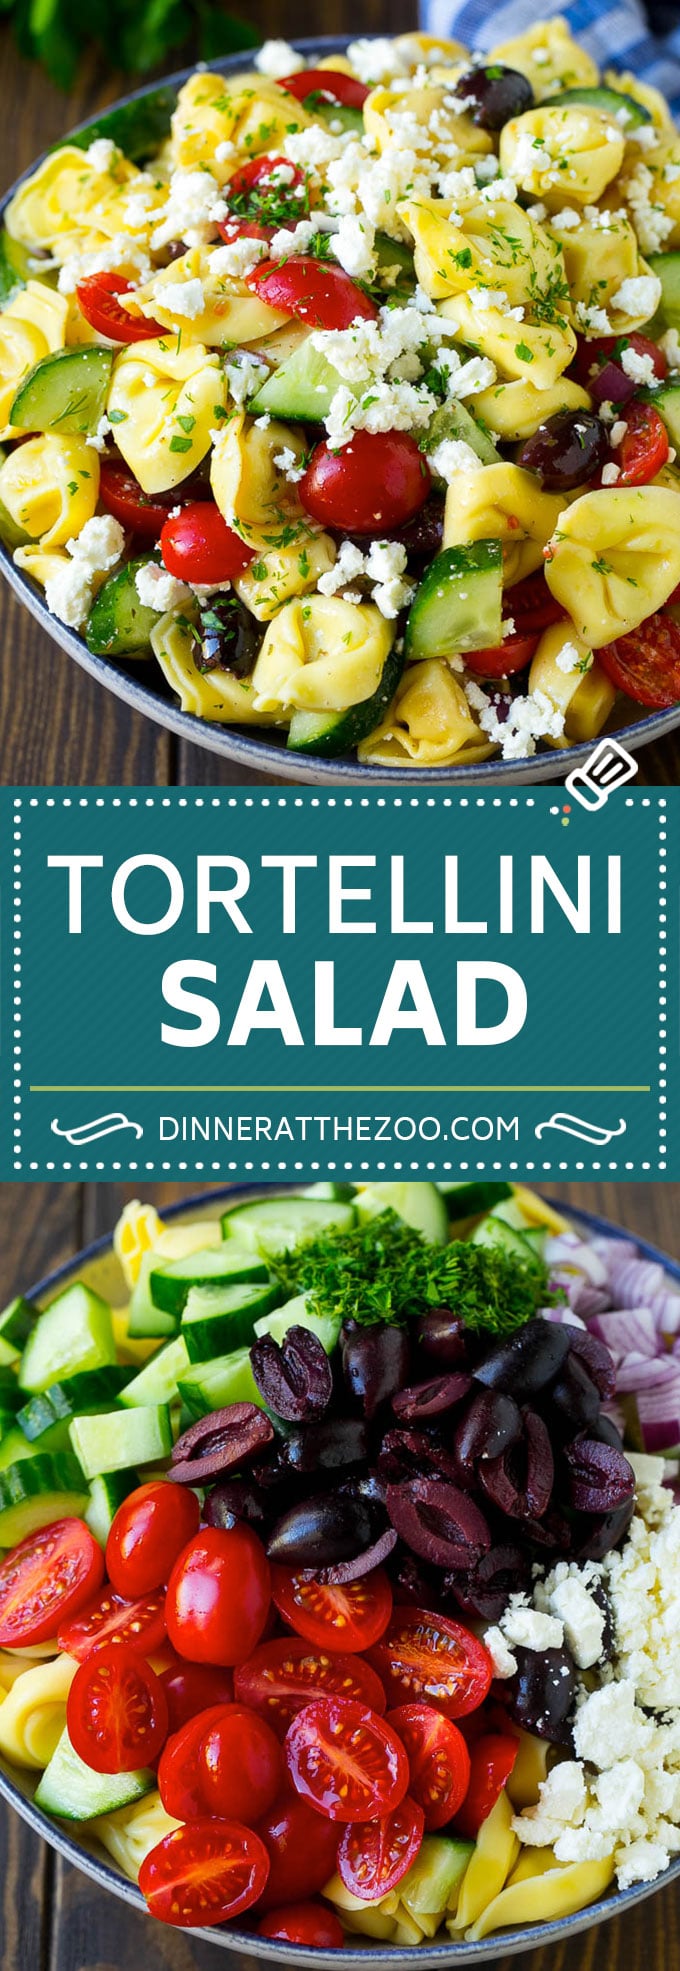 Greek Tortellini Salad Recipe | Pasta Salad | Tortellini Salad | Greek Salad #greek #tortellini #pasta #salad #cucumbers #olives #dinner #dinneratthezoo